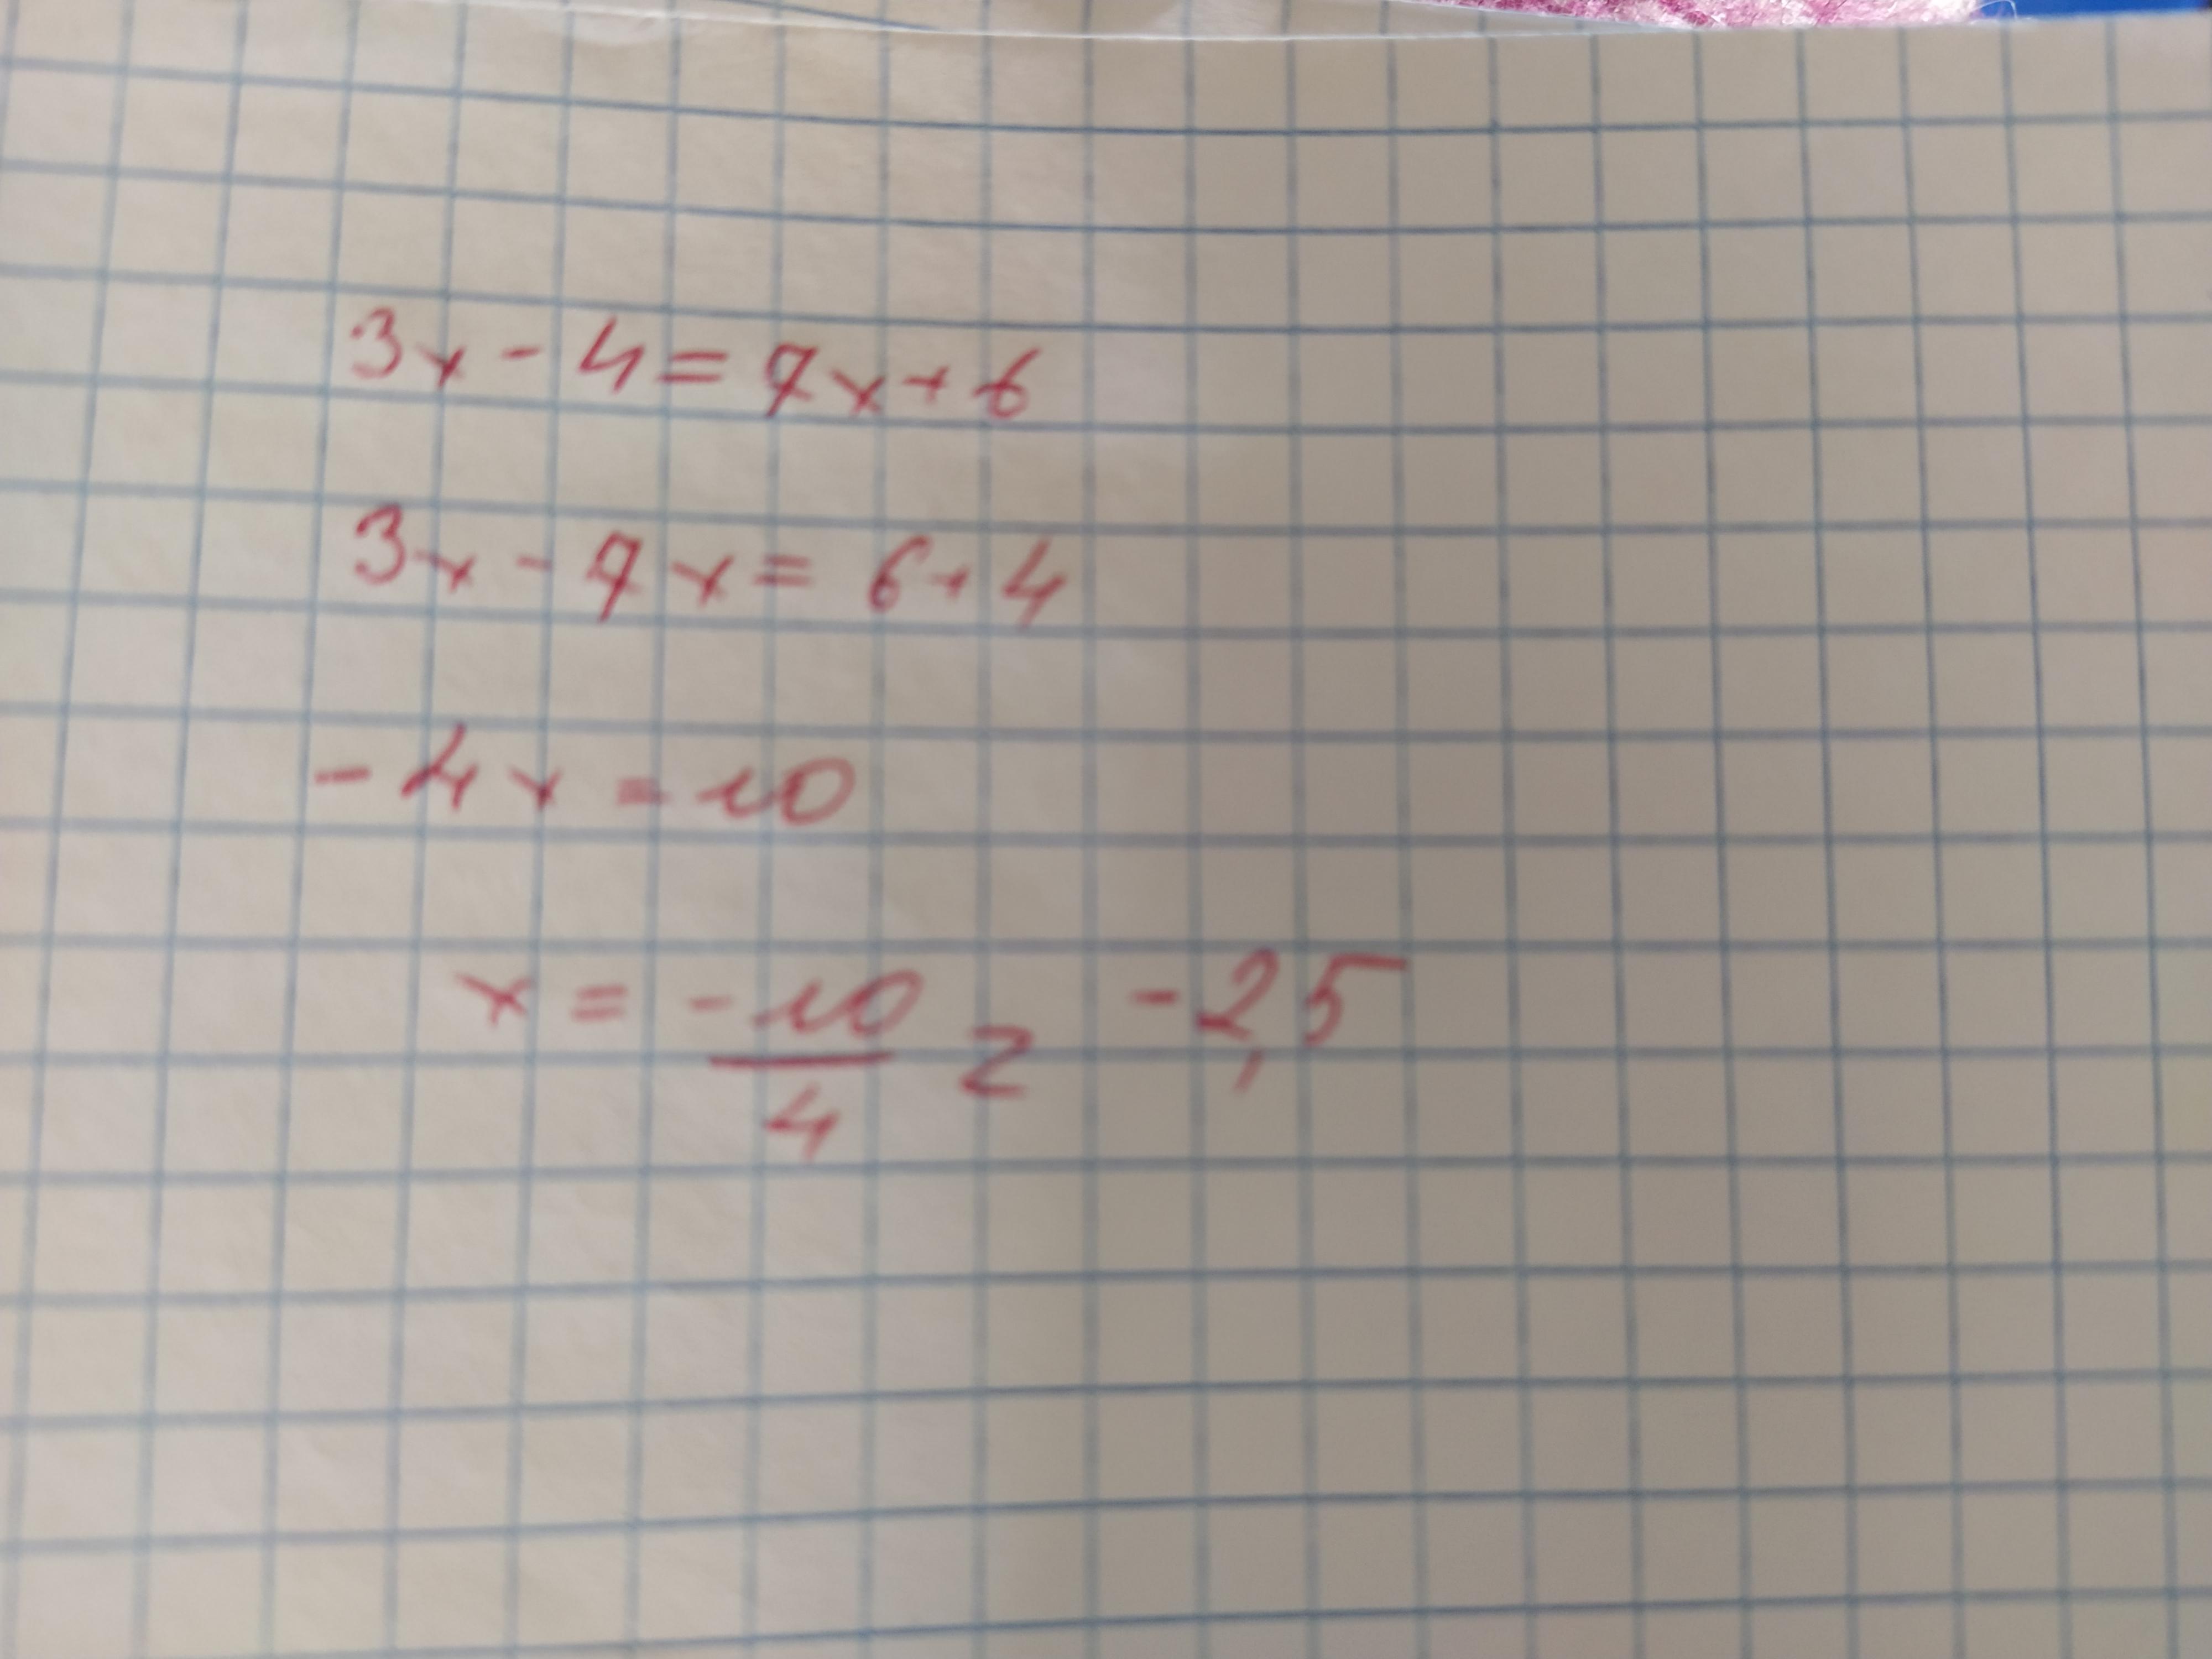 18 7 x 3 5 2x. При каких значениях x. X^3-7x+6. -6+6 Равно. 6-7x< 3x-7.